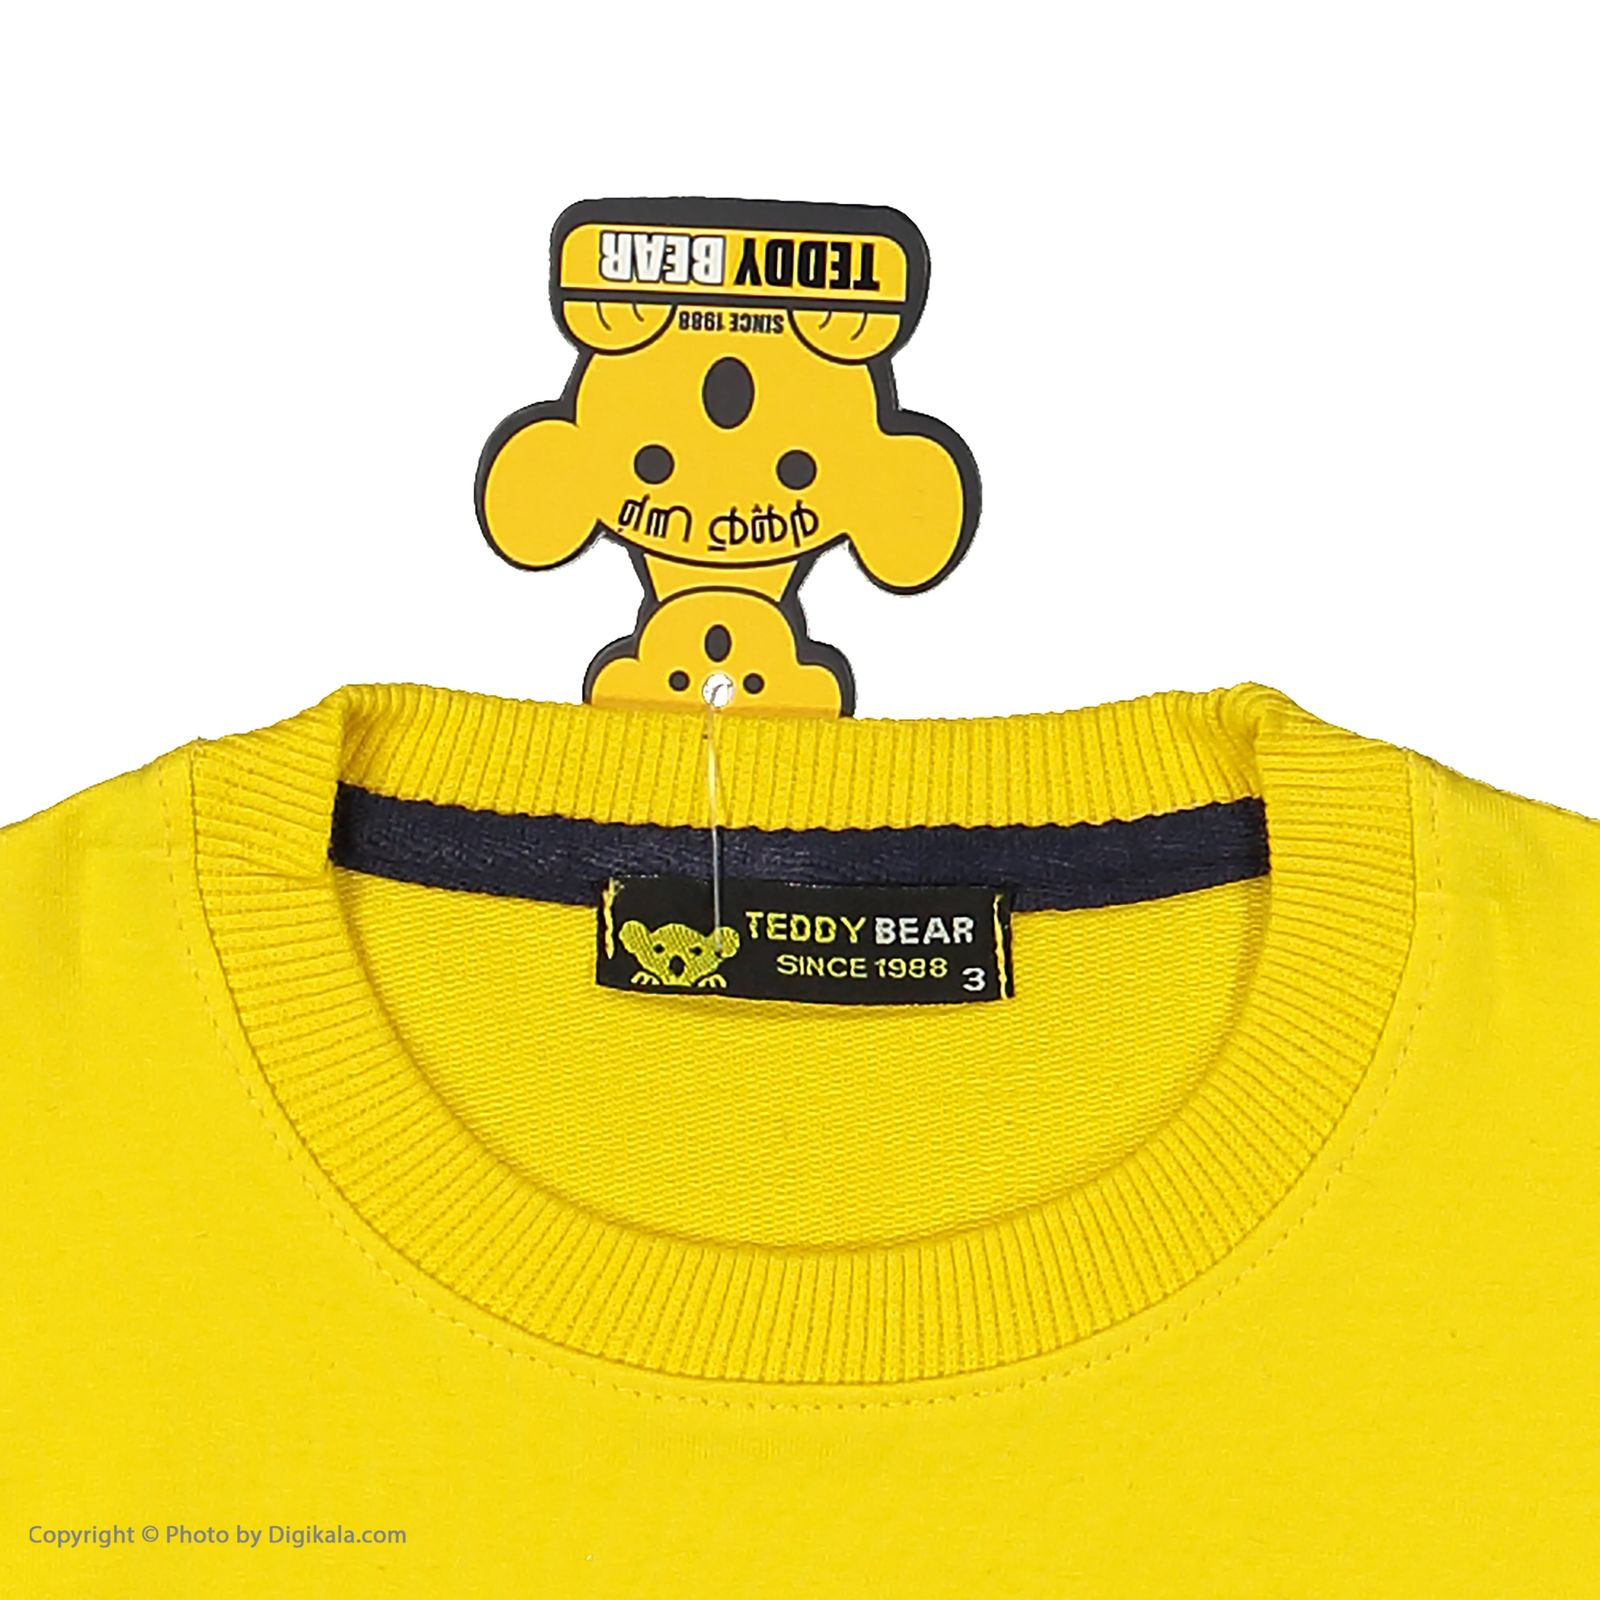 ست تی شرت و شلوار پسرانه خرس کوچولو مدل 2011109-16